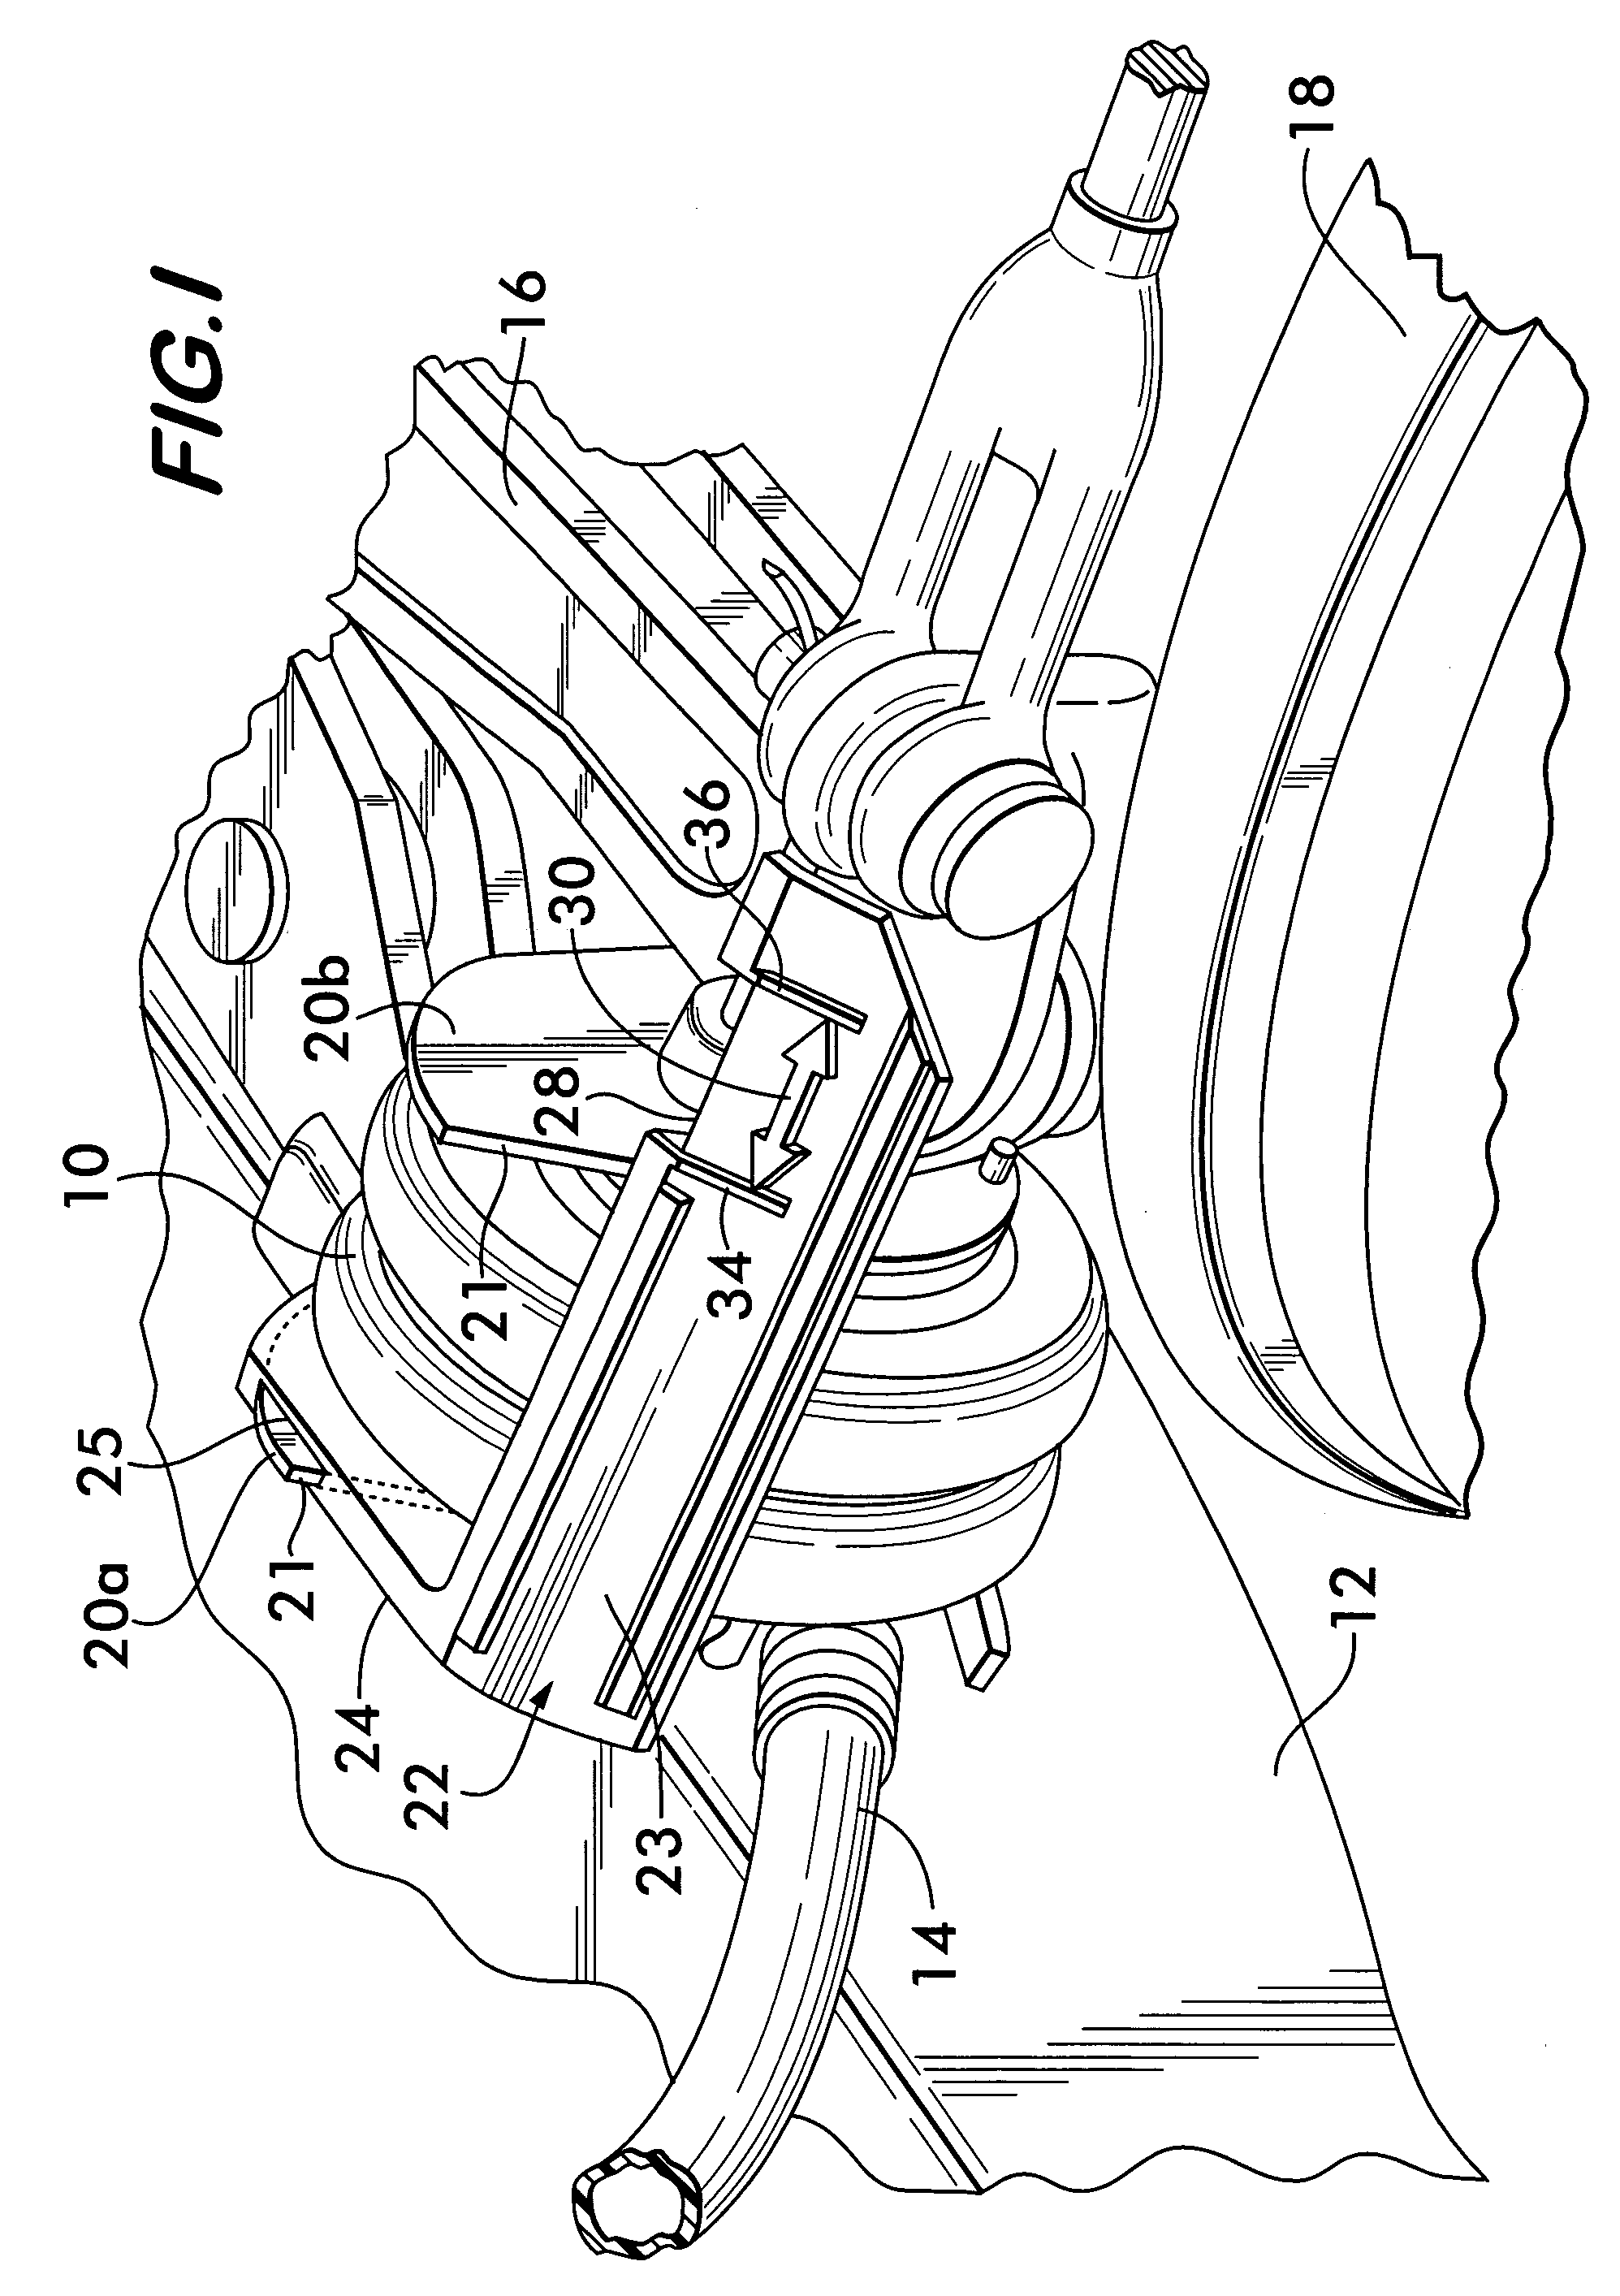 Brake actuator indicator